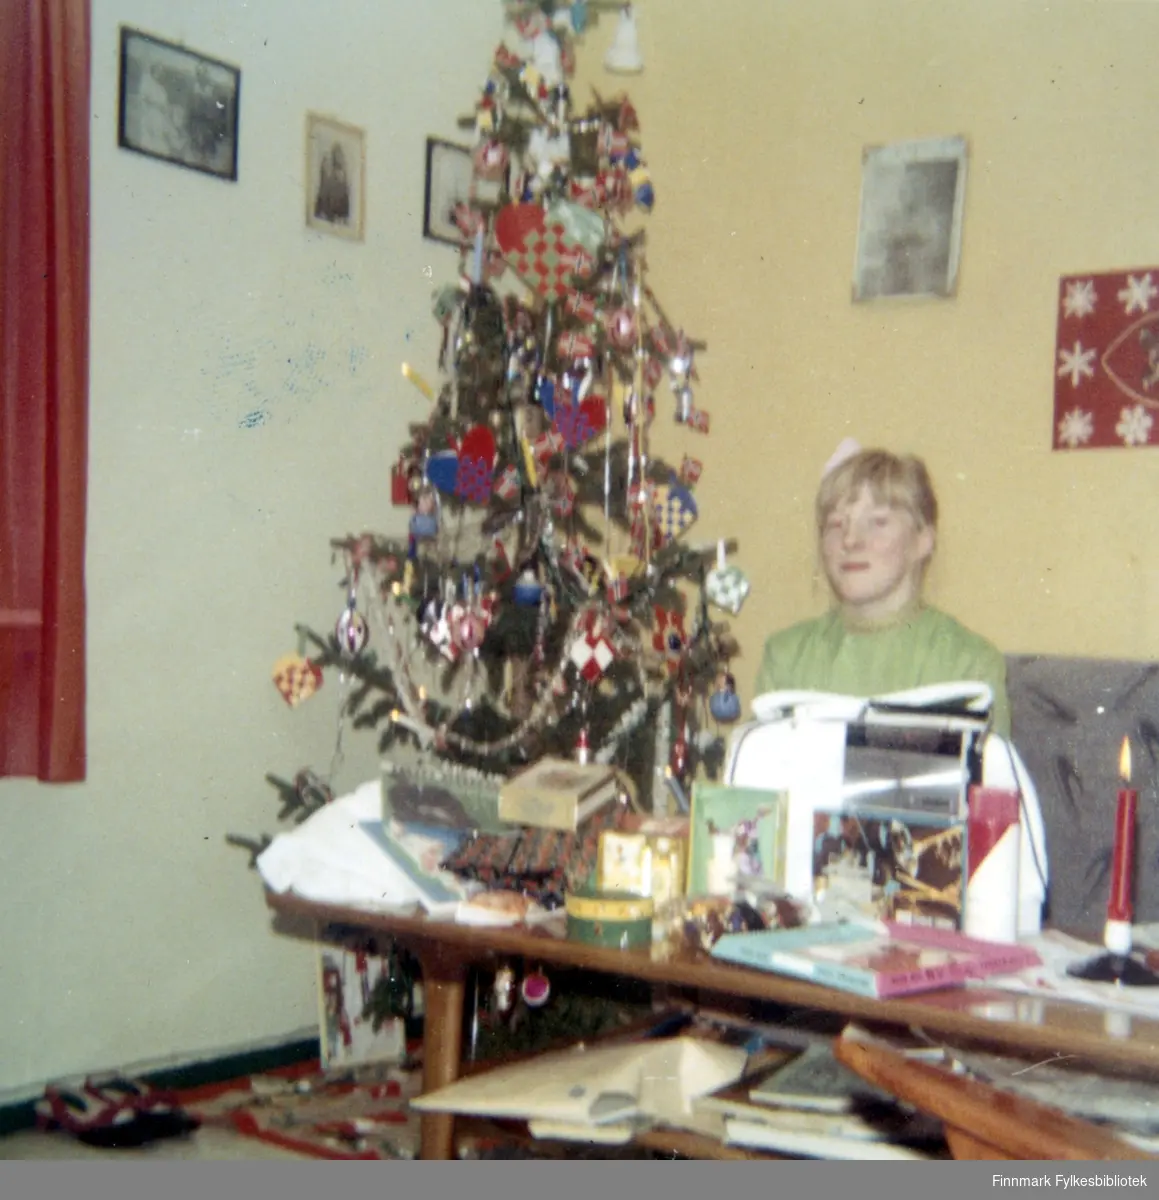 Vanja Larsen sitter ved siden av et juletre i Syltefjord. På veggen henger det flere bilder og på bordet kan man se flere gjenstander, blant annet et talgelys. Juletreet er pyntet med julepynt. På venstre hjørne av bilde kan man skimte et par sko.